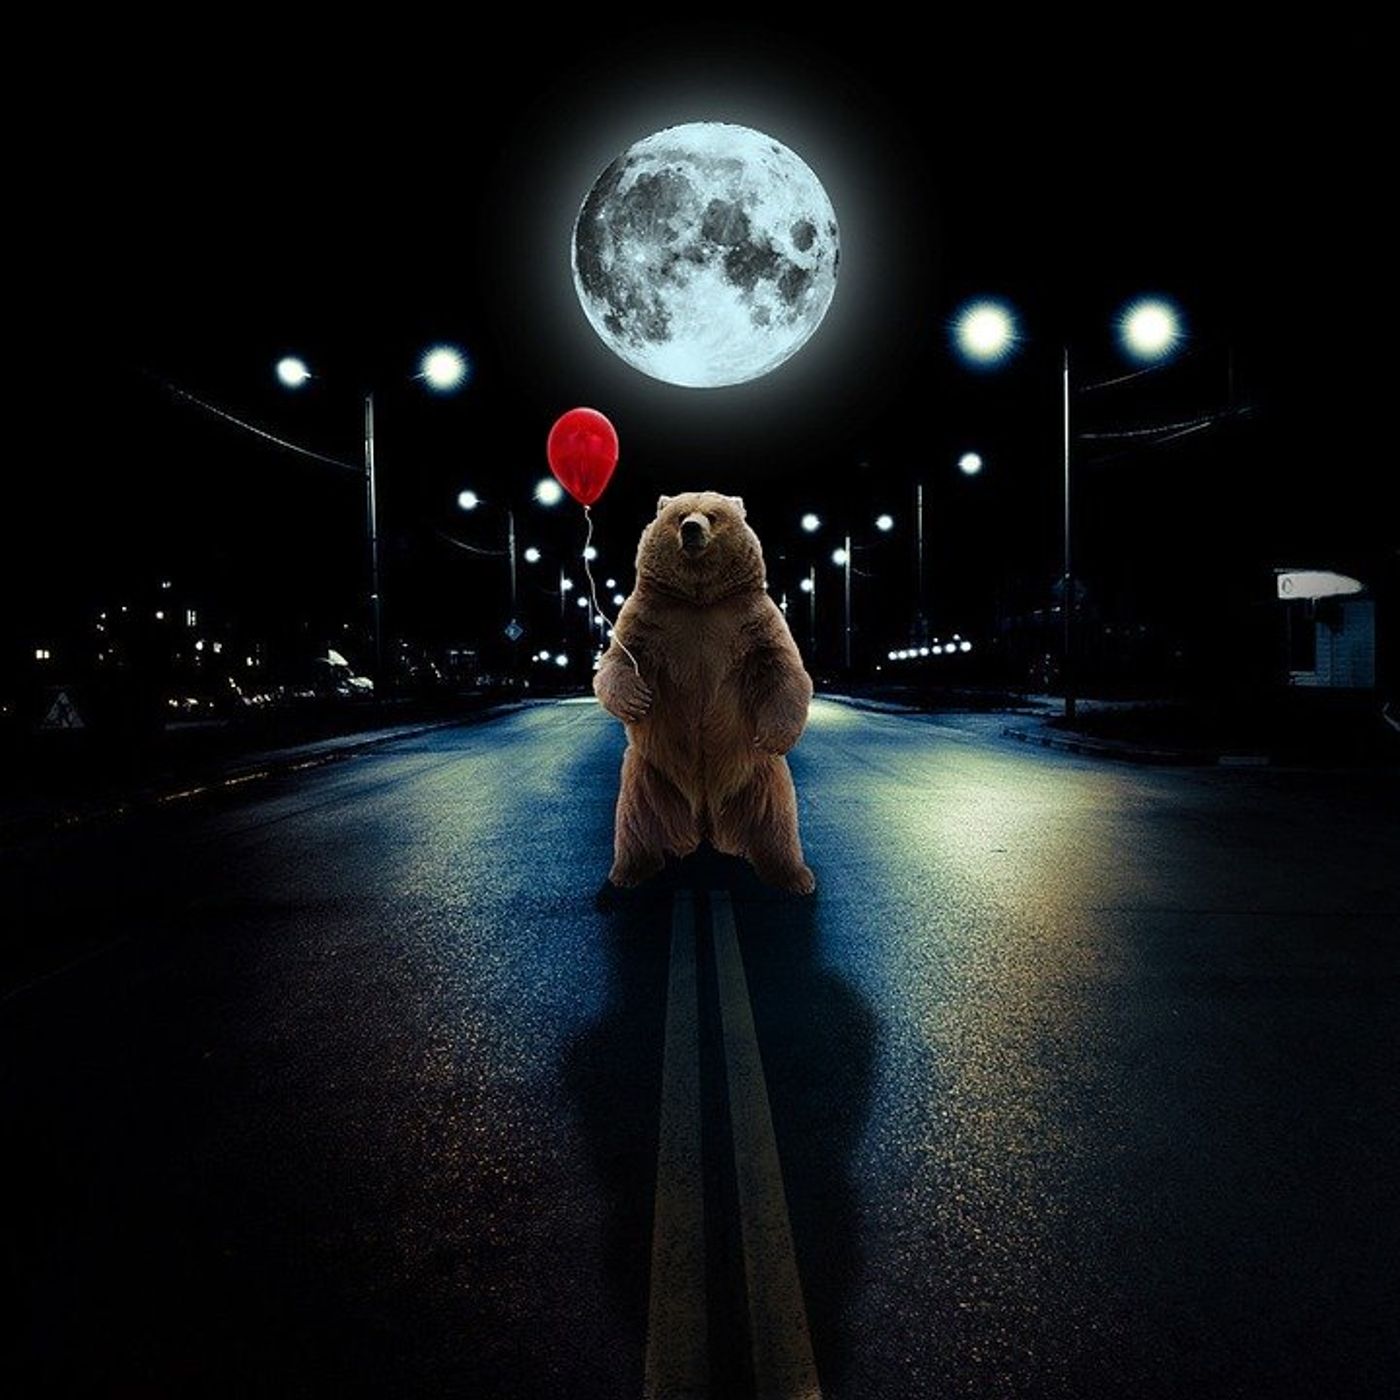 #28 - A Bear on the Moon